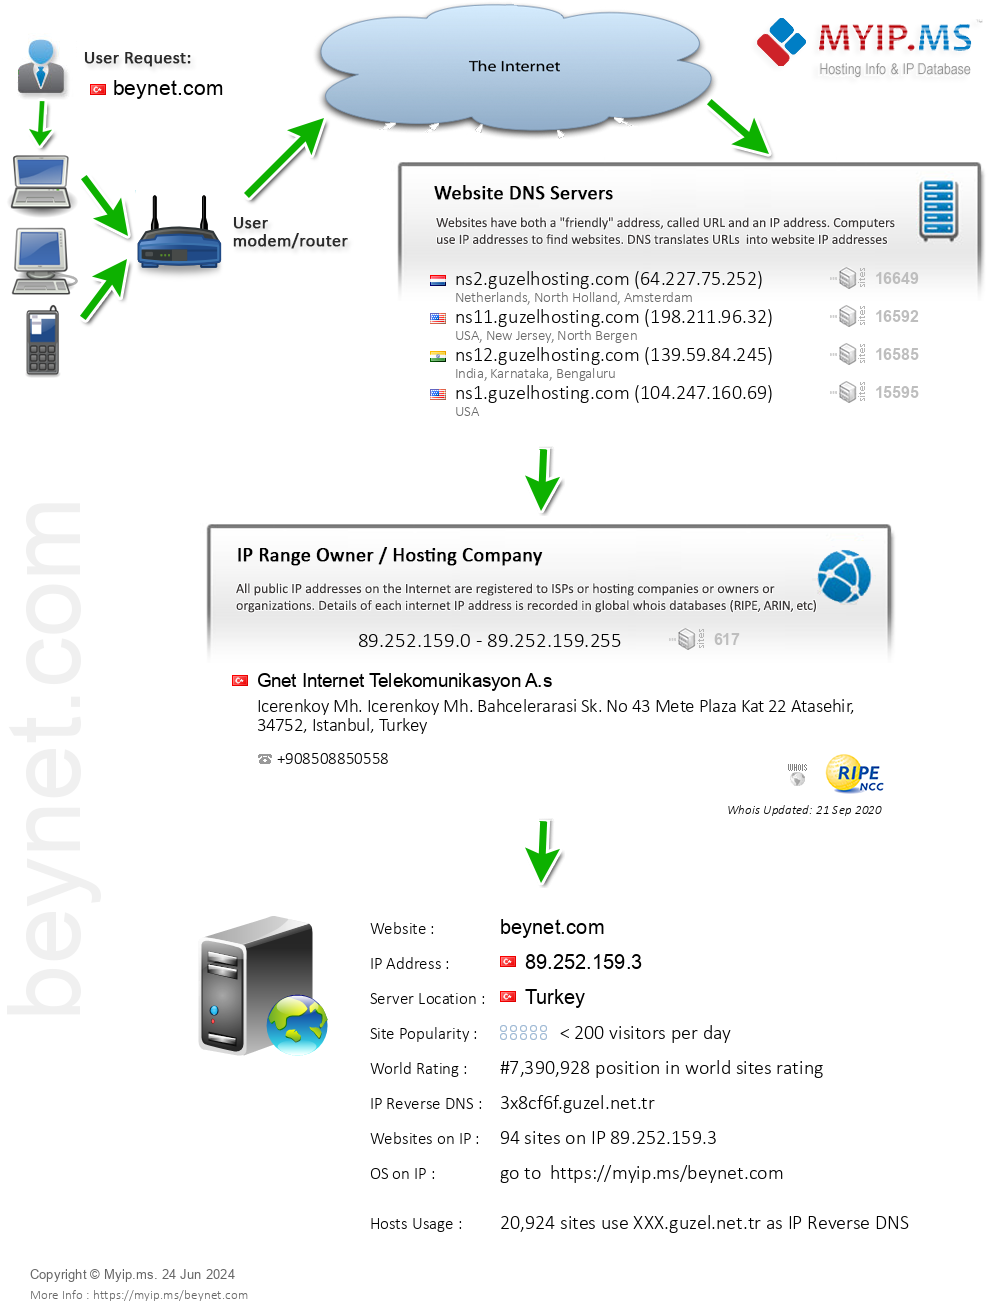 Beynet.com - Website Hosting Visual IP Diagram